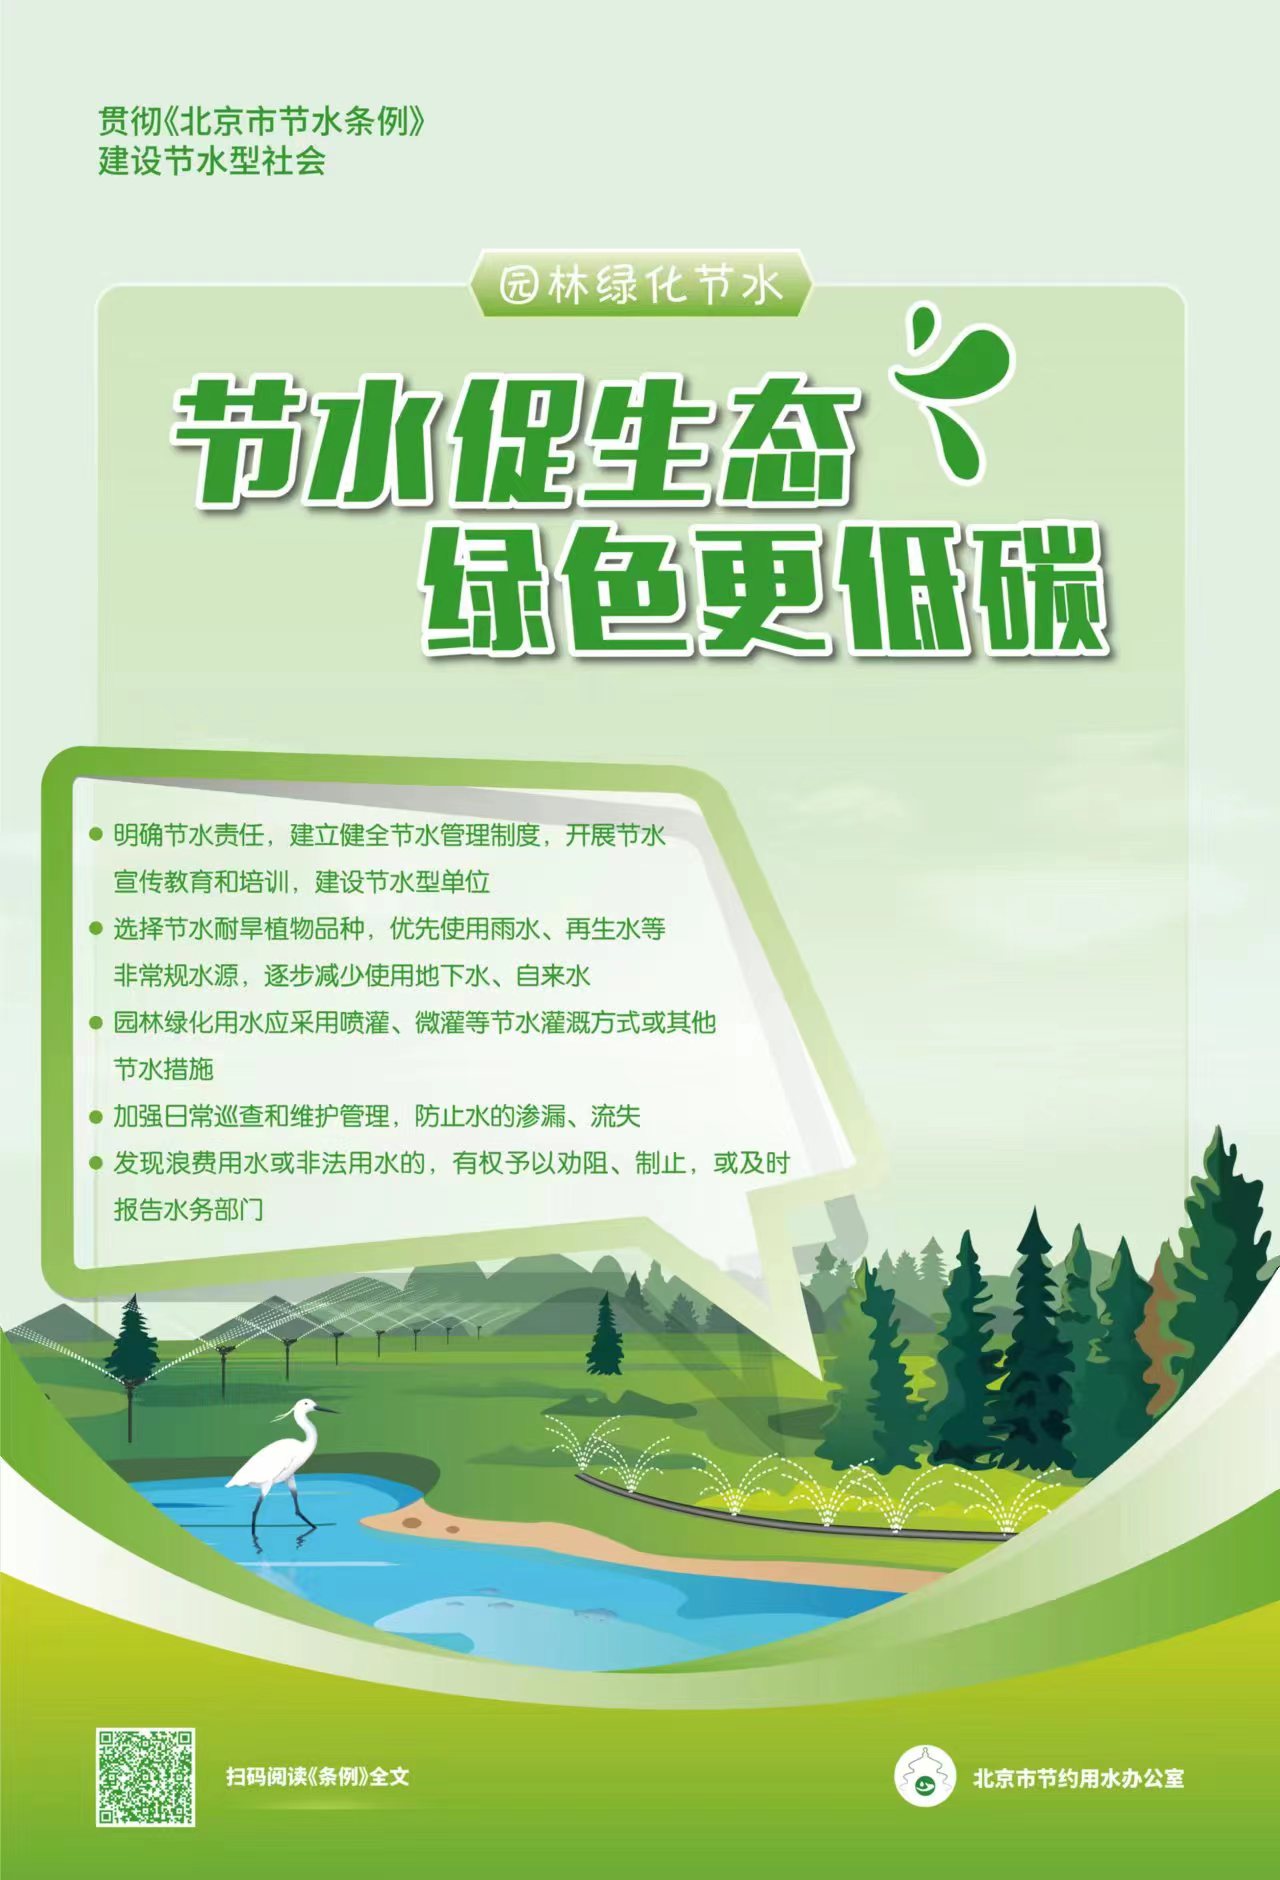 贯彻《北京市节水条例》建设节水型社会